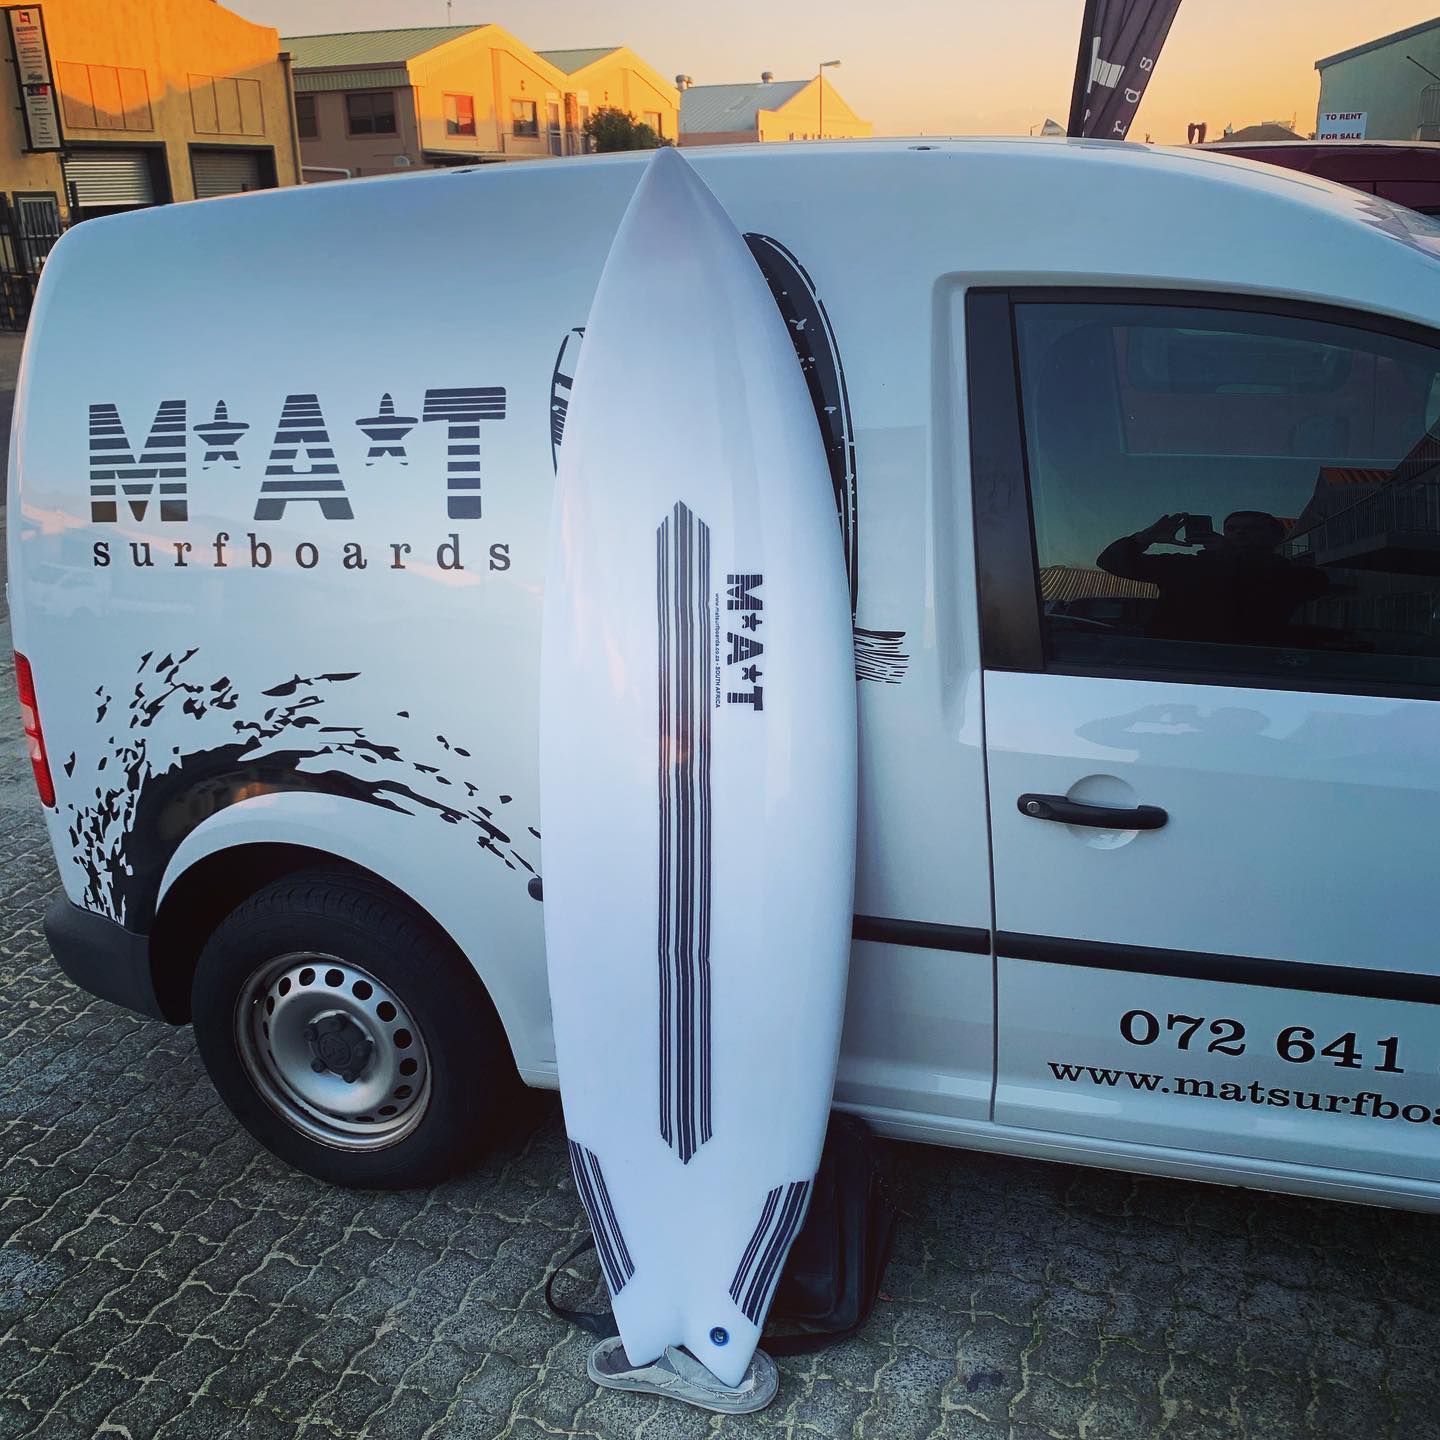 MAT Surfboards